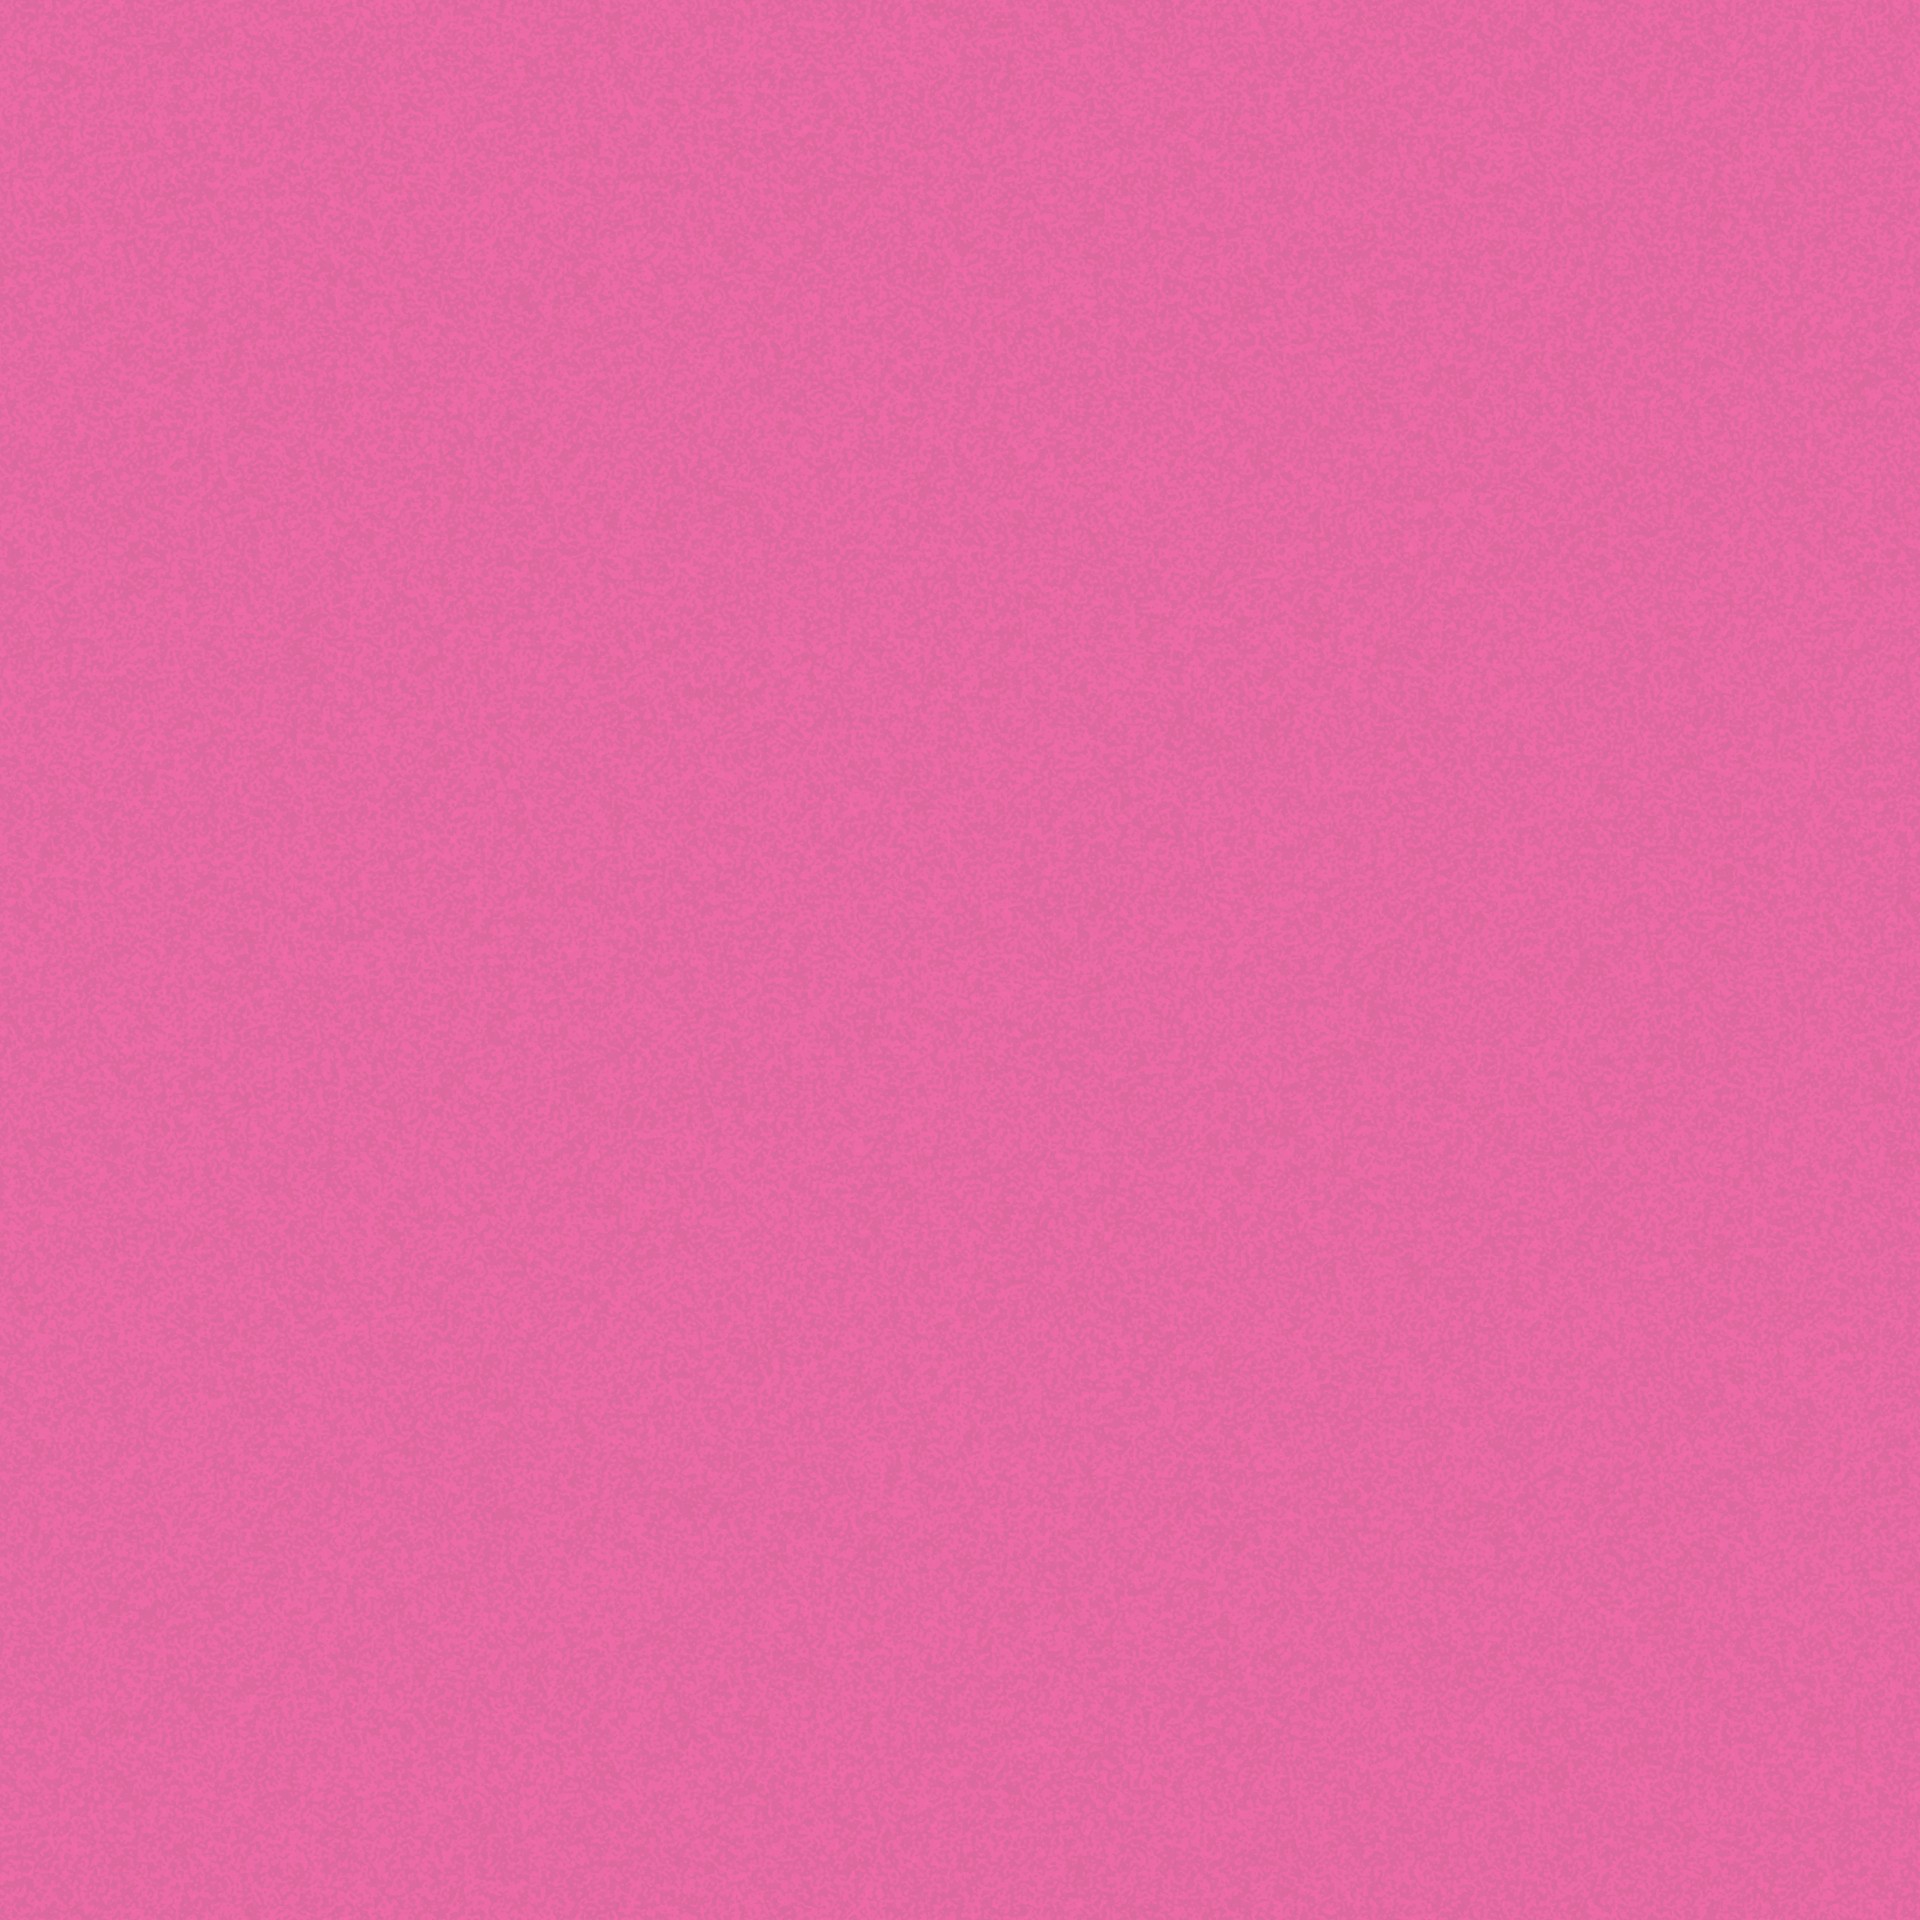 Розовый текстурированный фон бумаги